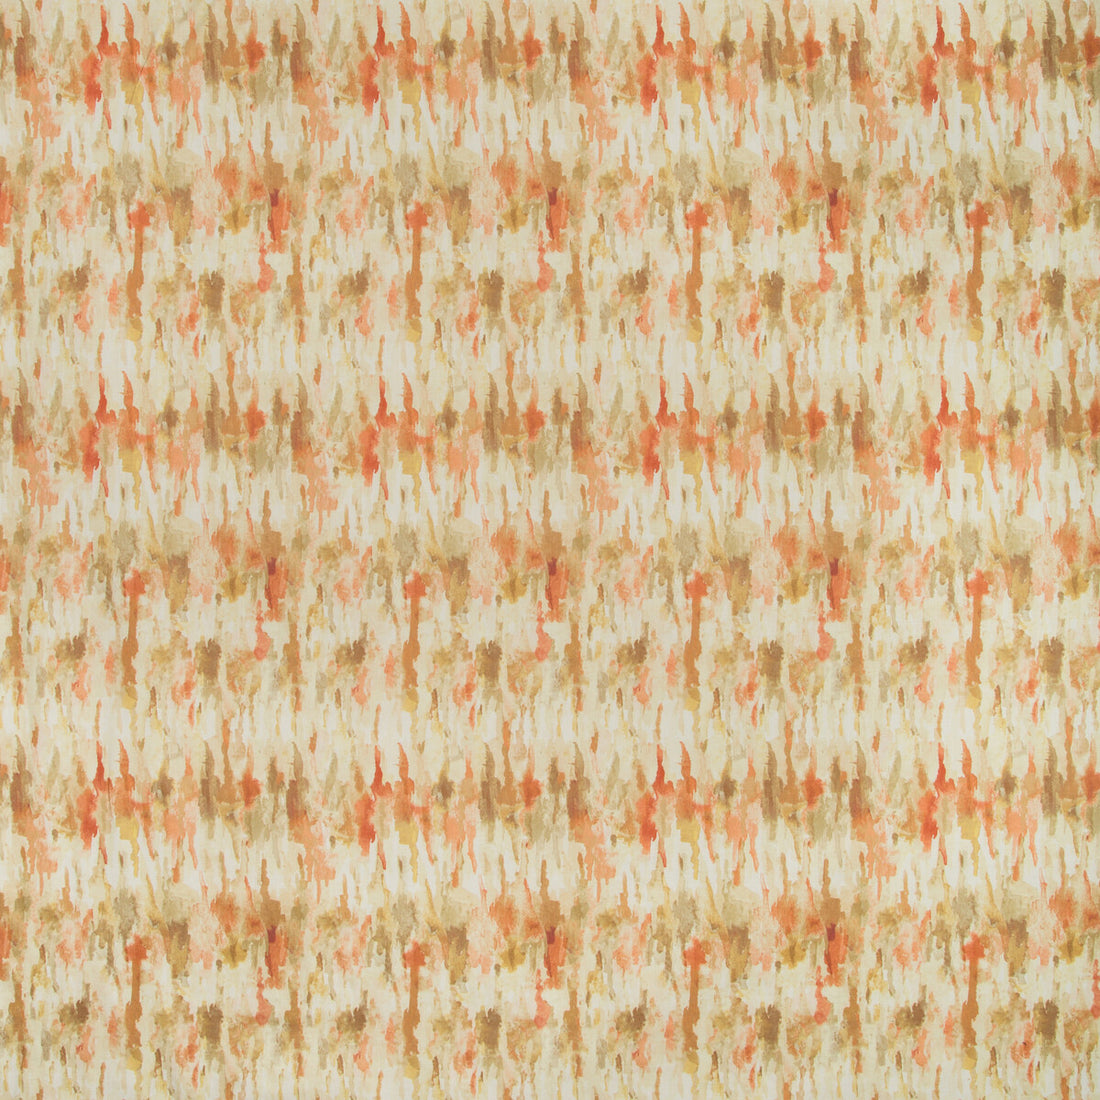 Kravet Basics fabric in freckled-412 color - pattern FRECKLED.412.0 - by Kravet Basics